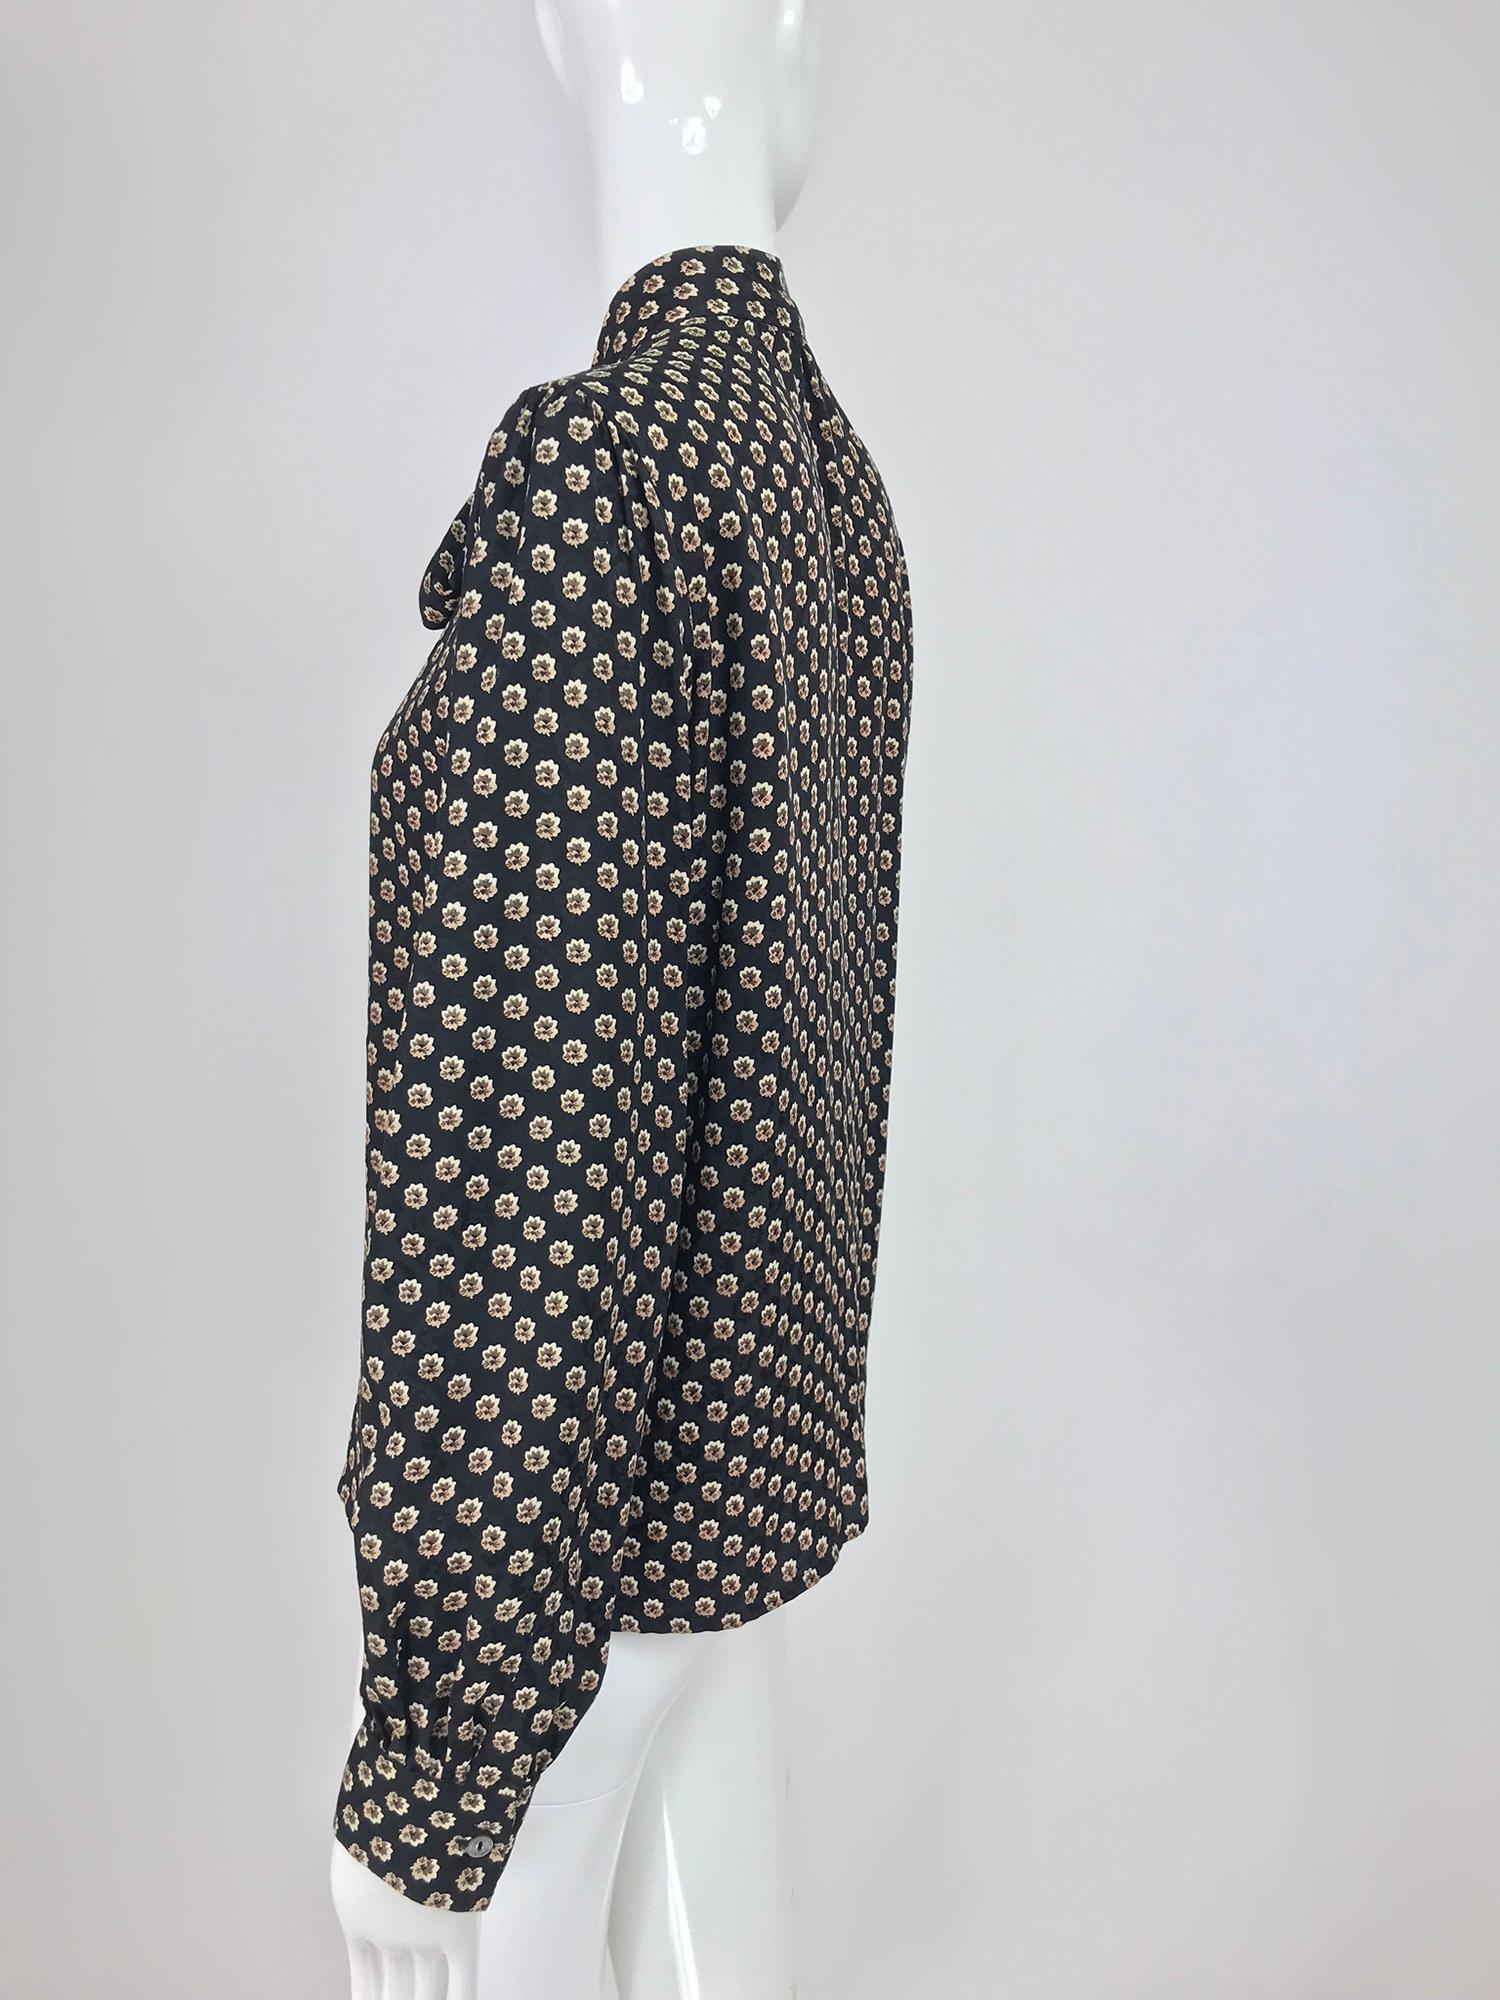 Yves Saint Laurent Provincial Print Silk Bow Neck Blouse 1970s 8